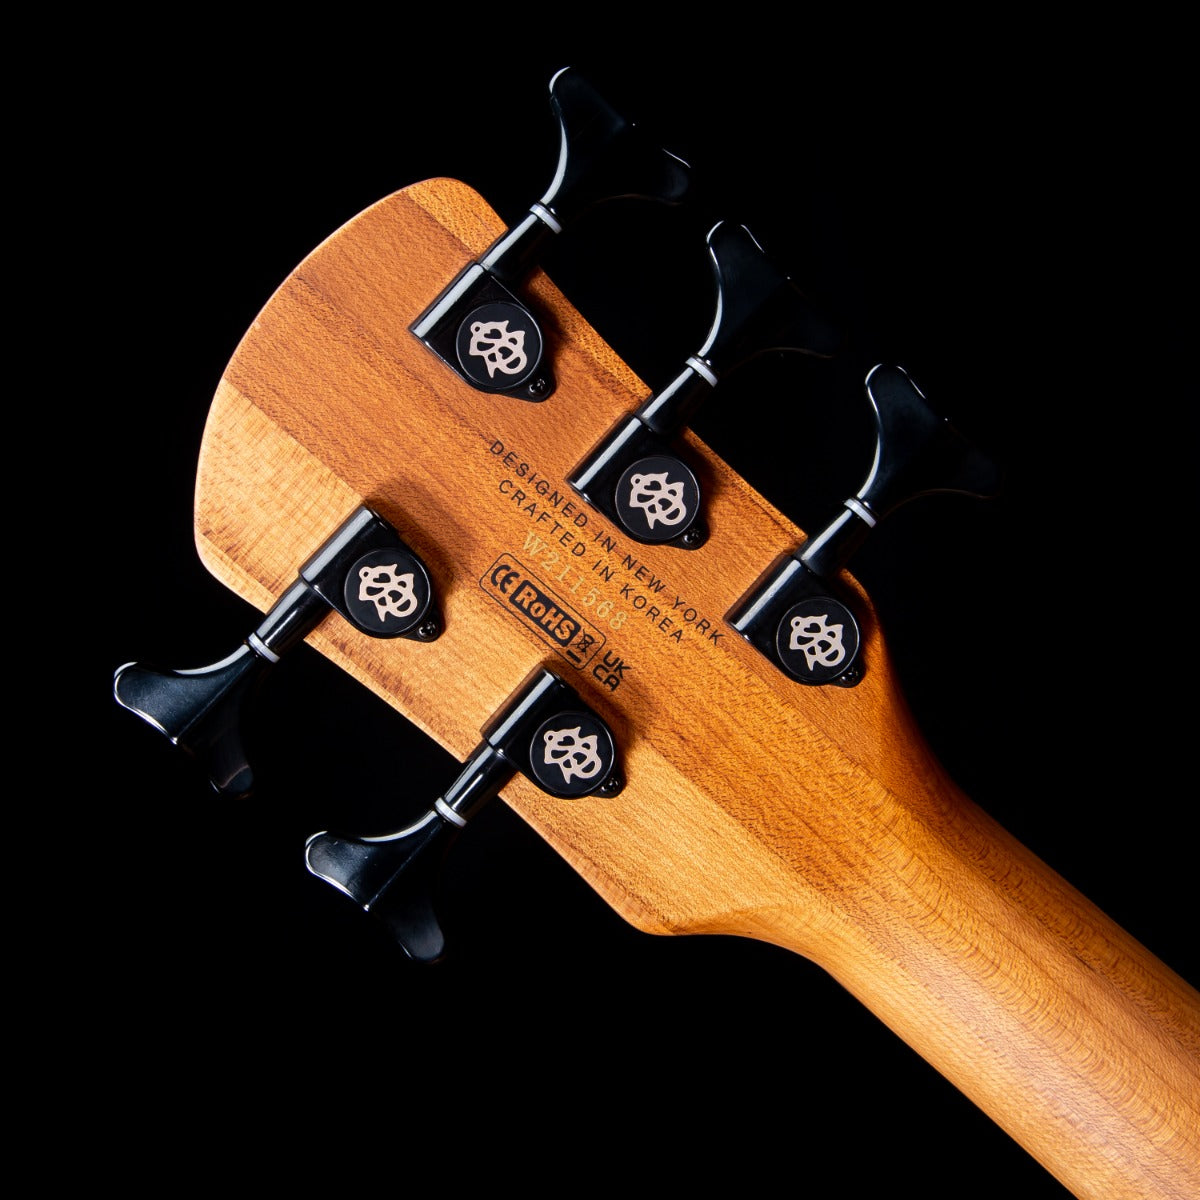 Spector NS Pulse II 5 Bass Guitar - Black Cherry Matte view 13